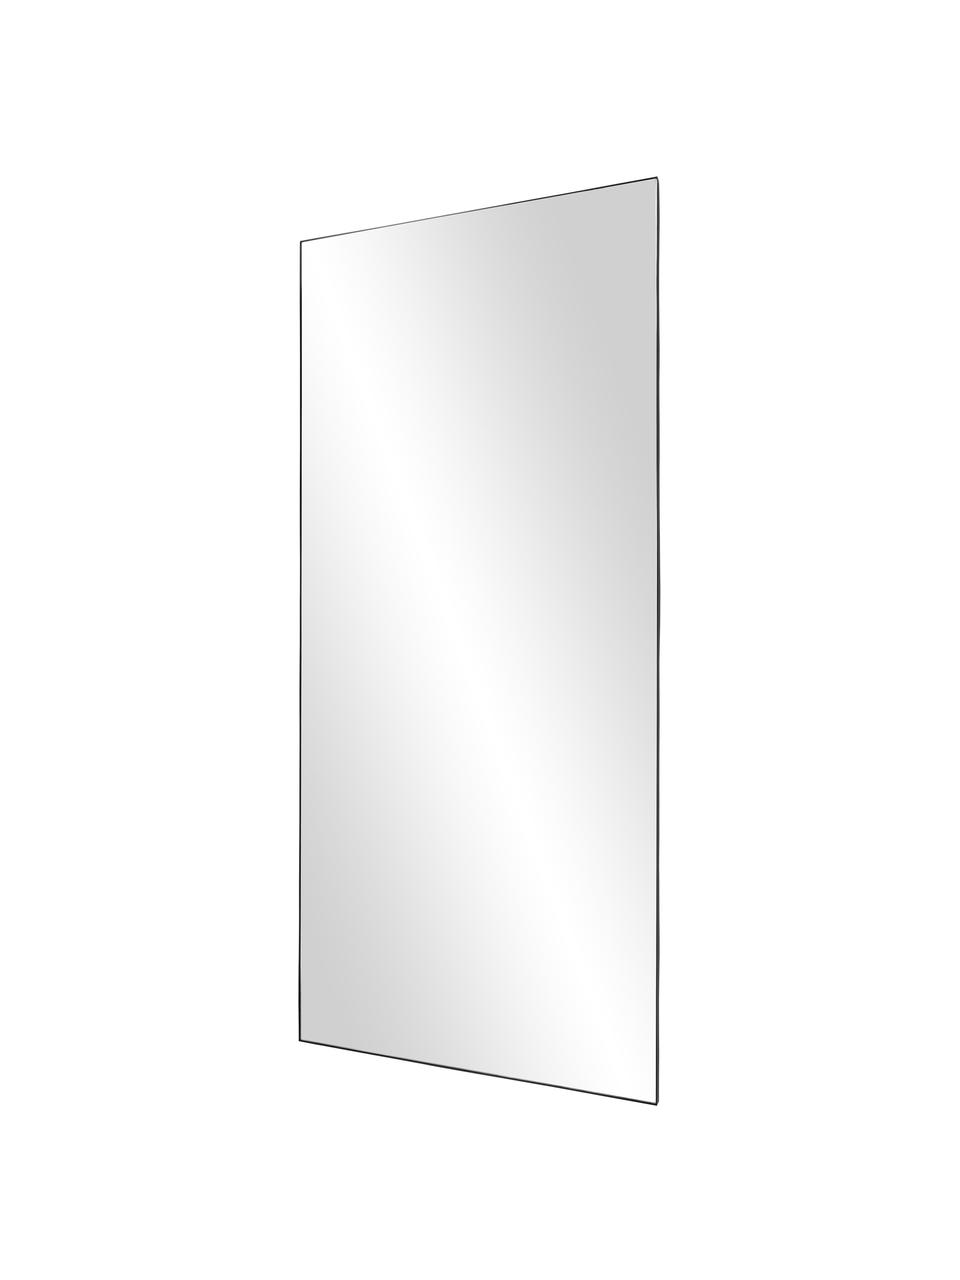 Großer Ganzkörperspiegel Cato, Rahmen: Metall, beschichtet, Rückseite: Mitteldichte Holzfaserpla, Spiegelfläche: Spiegelglas, Schwarz, B 80 x H 180 cm